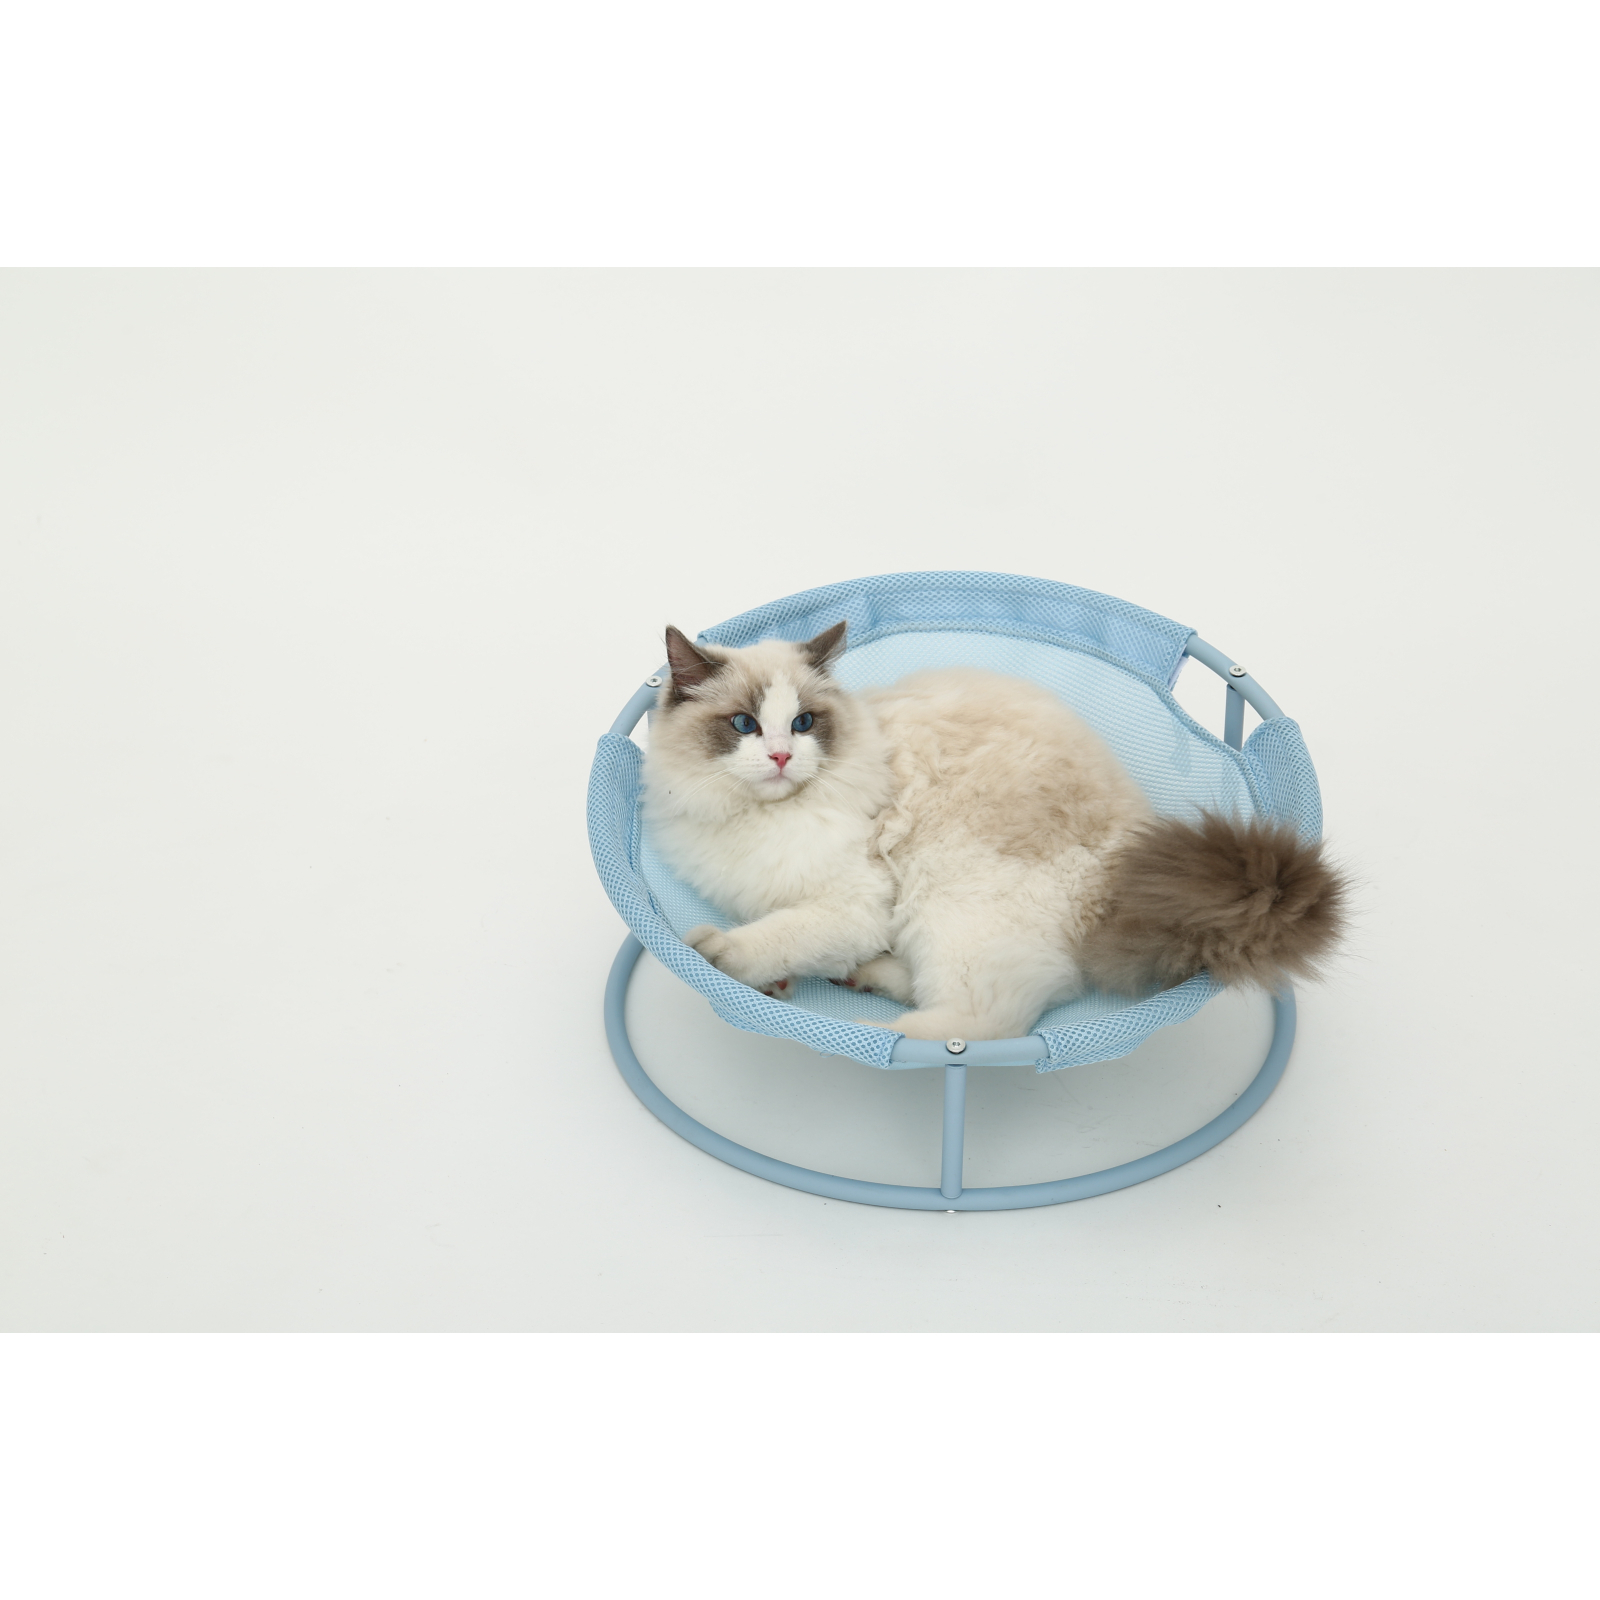 Лежак для животных MISOKO&CO Pet bed round 45x45x22 см mint (HOOP31831) изображение 5